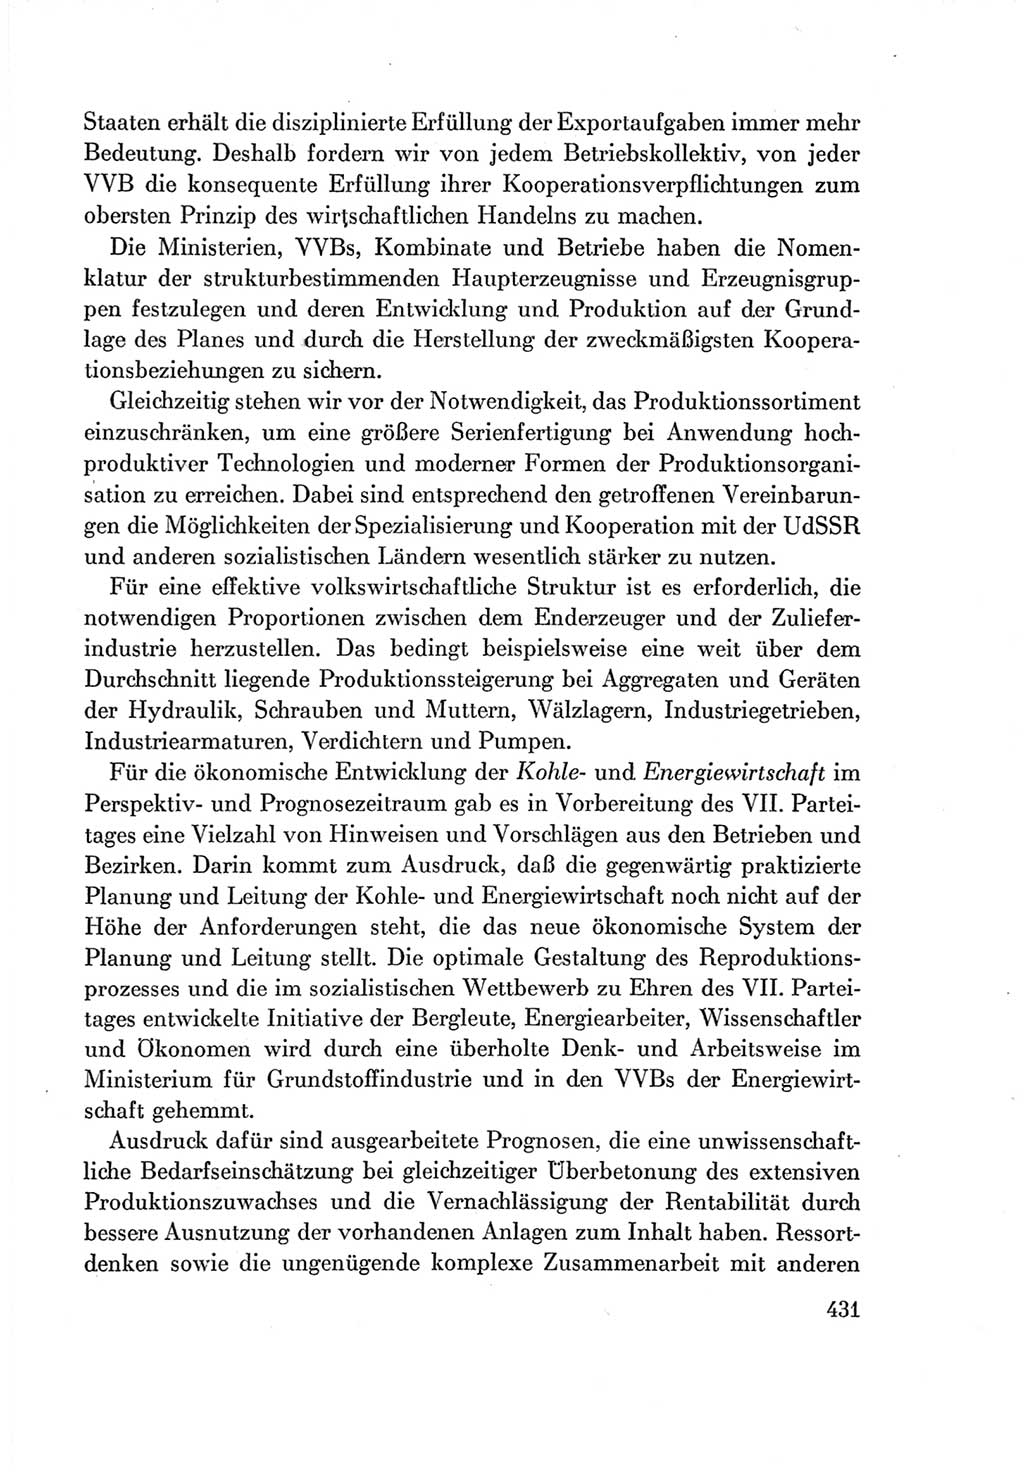 Protokoll der Verhandlungen des Ⅶ. Parteitages der Sozialistischen Einheitspartei Deutschlands (SED) [Deutsche Demokratische Republik (DDR)] 1967, Band Ⅰ, Seite 431 (Prot. Verh. Ⅶ. PT SED DDR 1967, Bd. Ⅰ, S. 431)